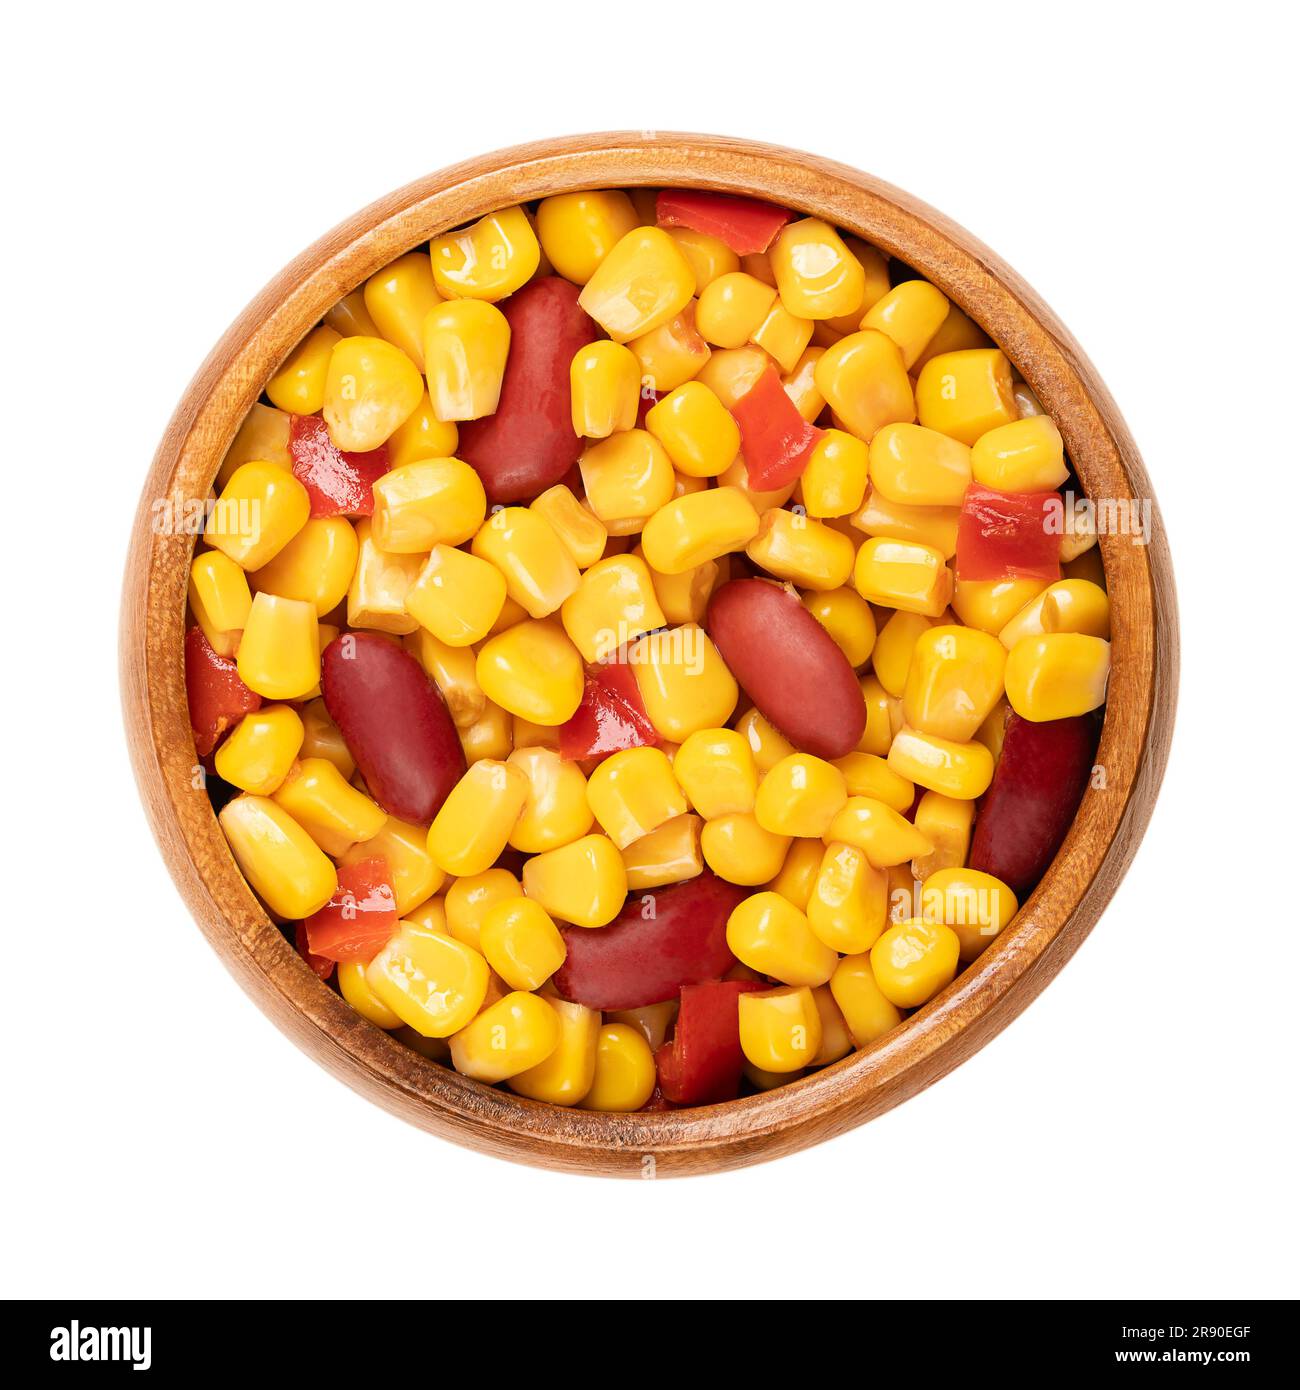 Dans un bol en bois, mélanger le maïs en conserve, les haricots rouges et les dés de poivron. Prêt à manger du mélange de maïs du Texas, comme accompagnement au barbecue. Banque D'Images